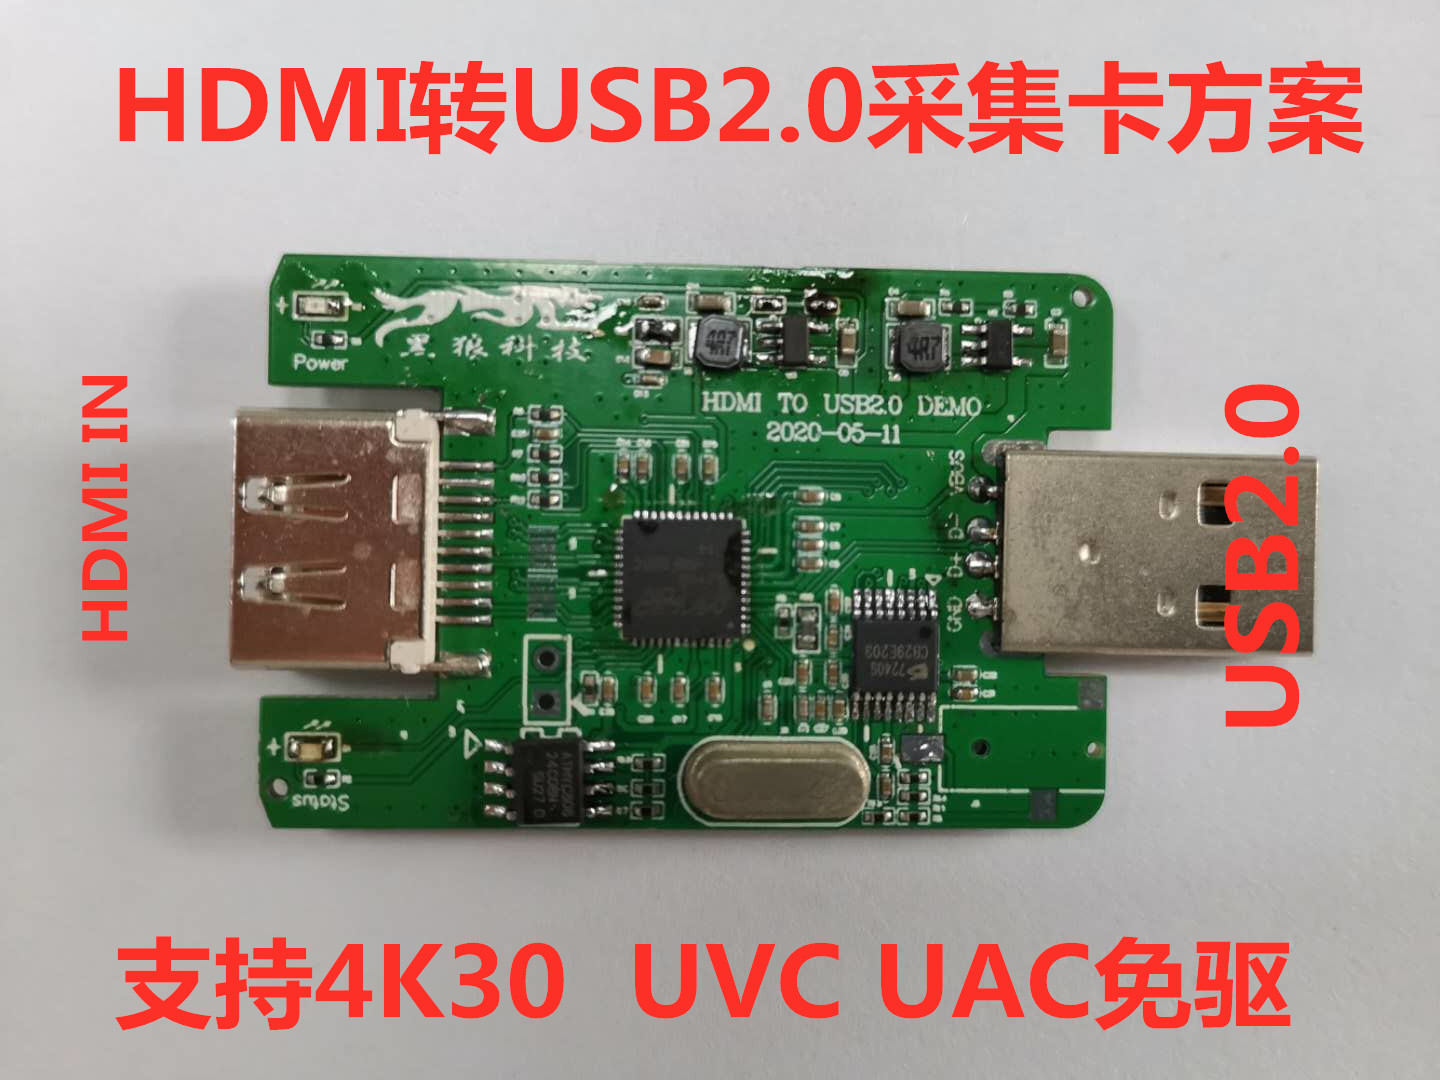 HDMI转USB2.0SDI采集卡支持4K60输入UVC免驱可定制